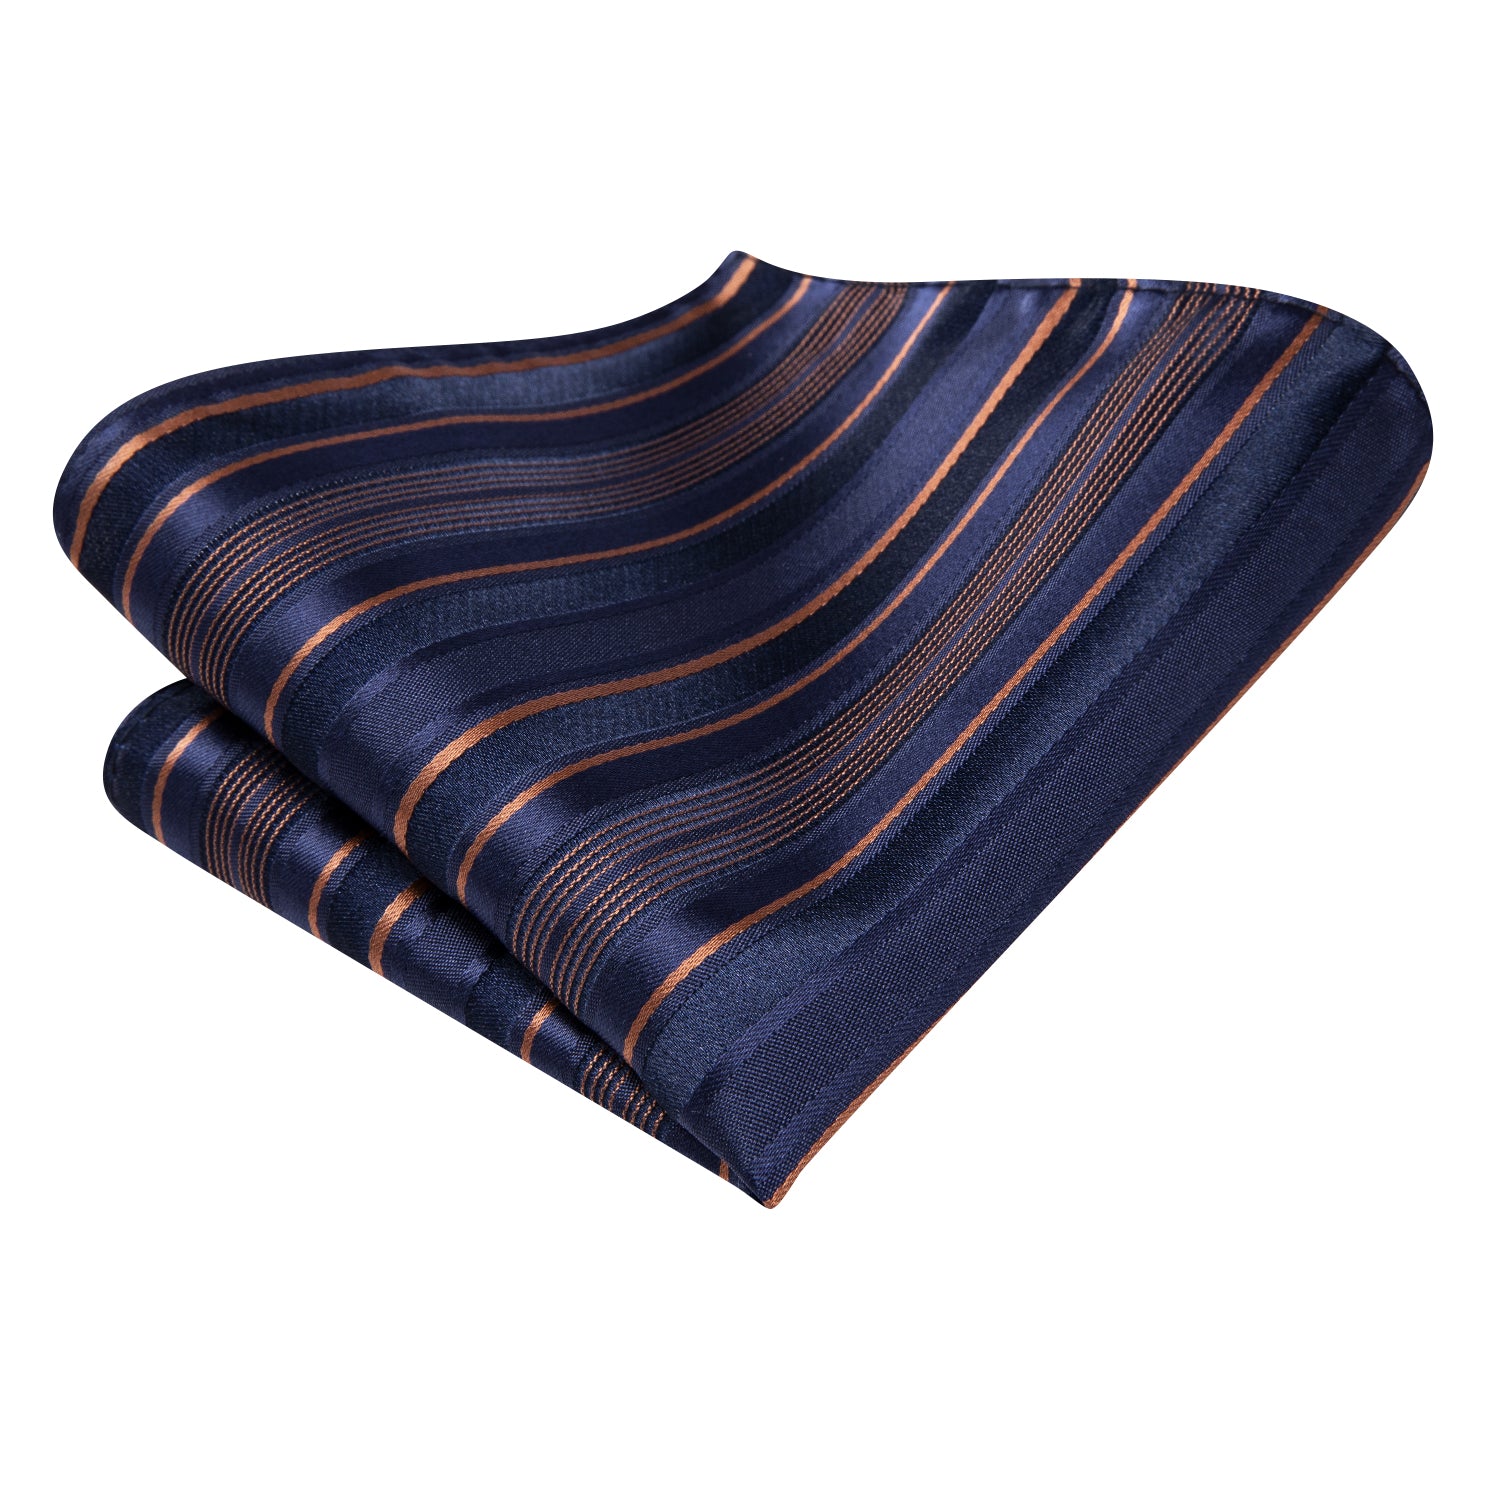 Hi-Tie Blue Orange Striped Men's Tie Pocket Square Cufflinks Set